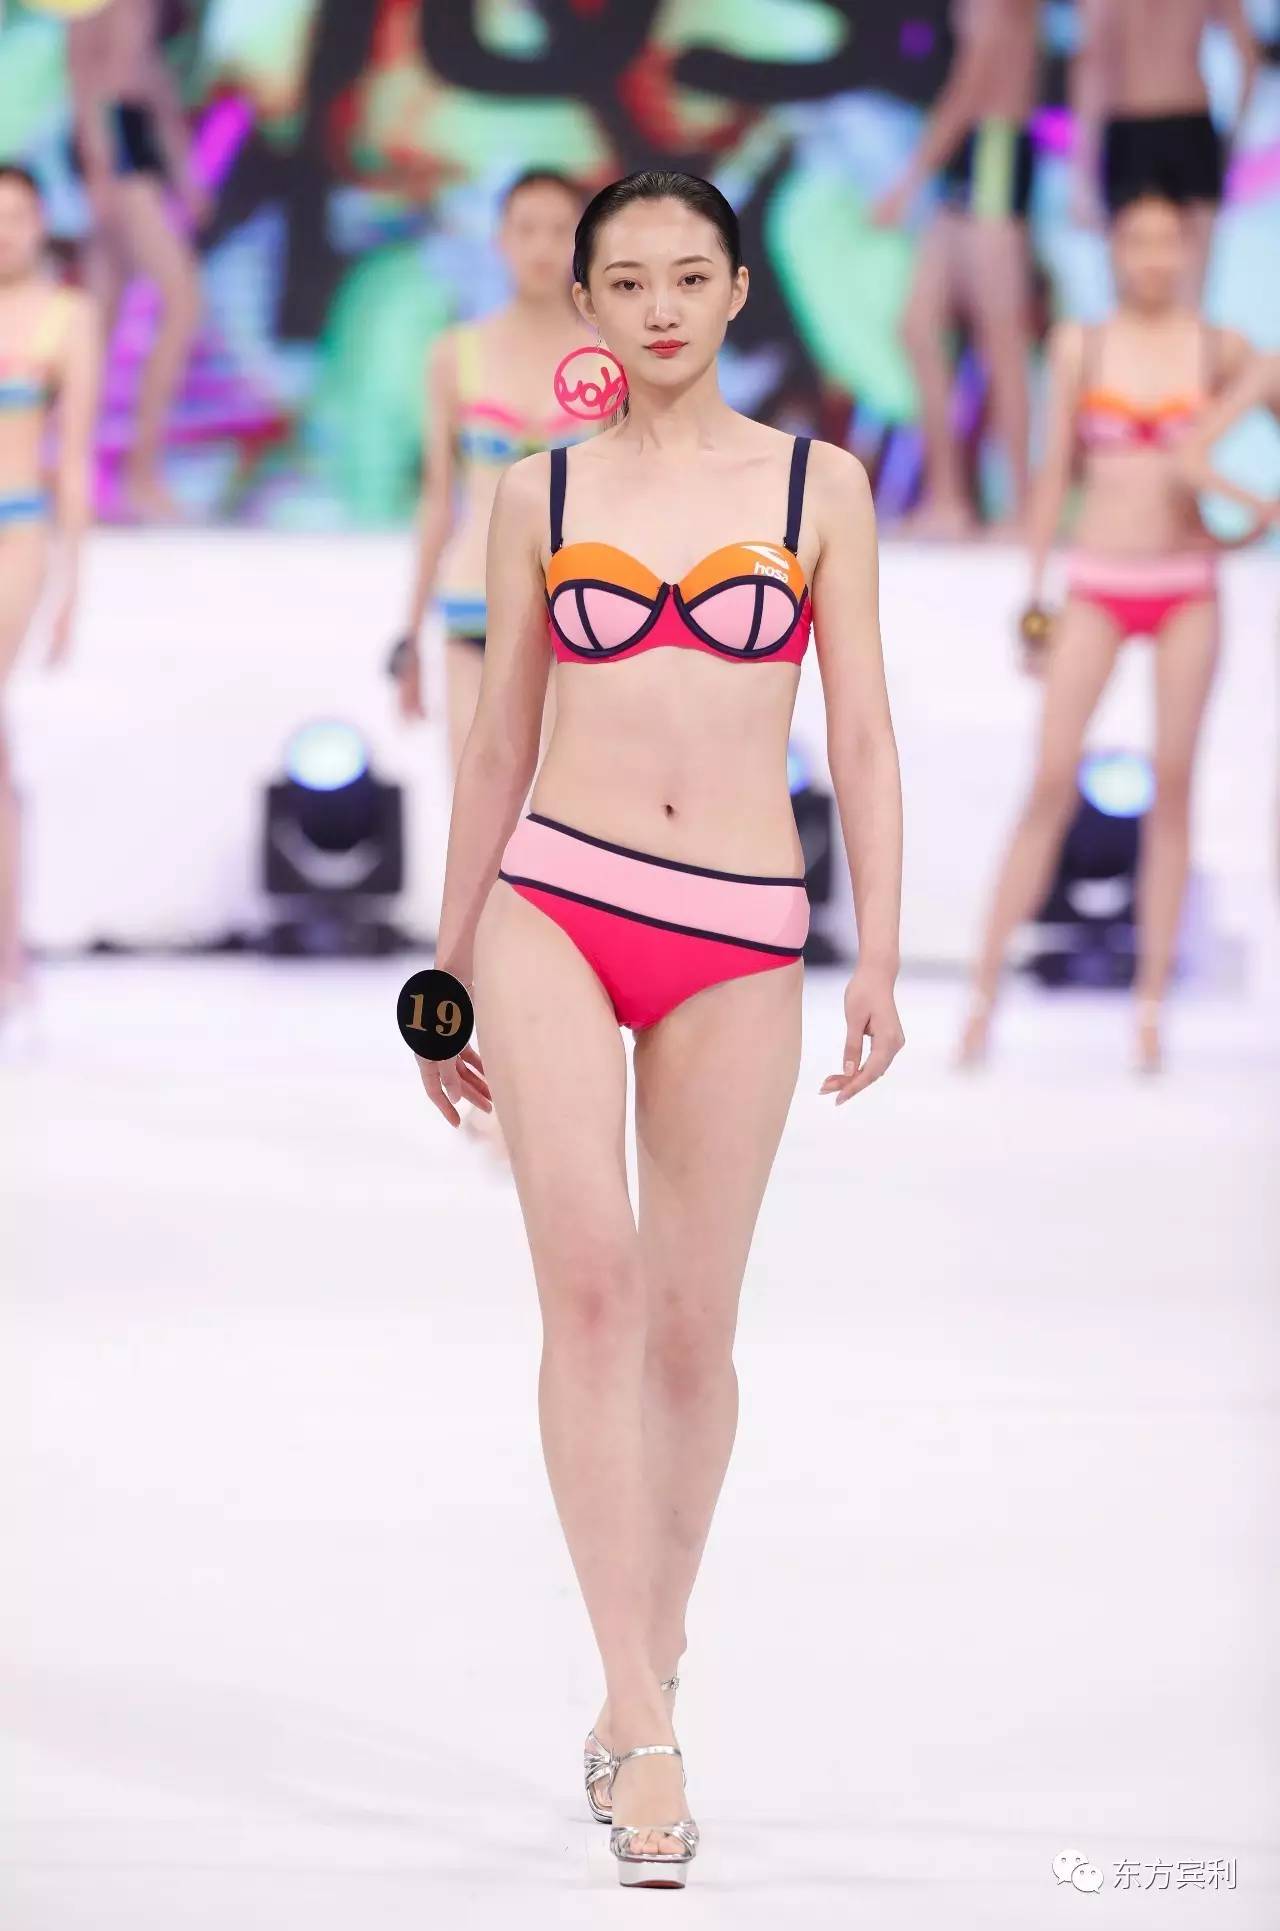 hosa模特泳装 中国新闻网